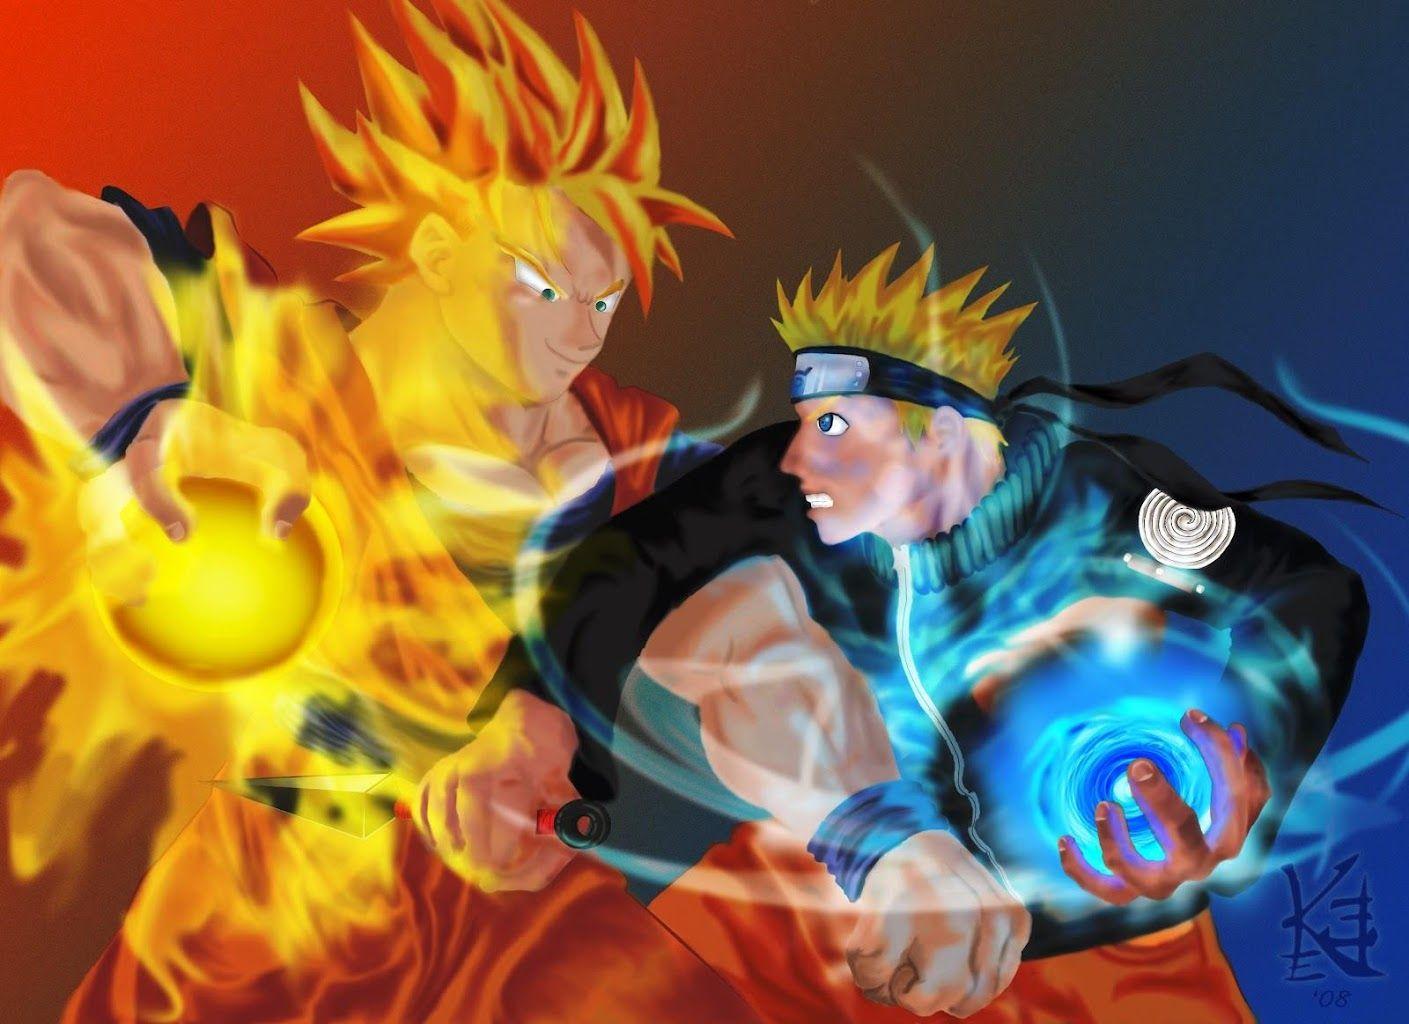 Naruto Vs Goku Live Wallpaper Download Vs Goku Live